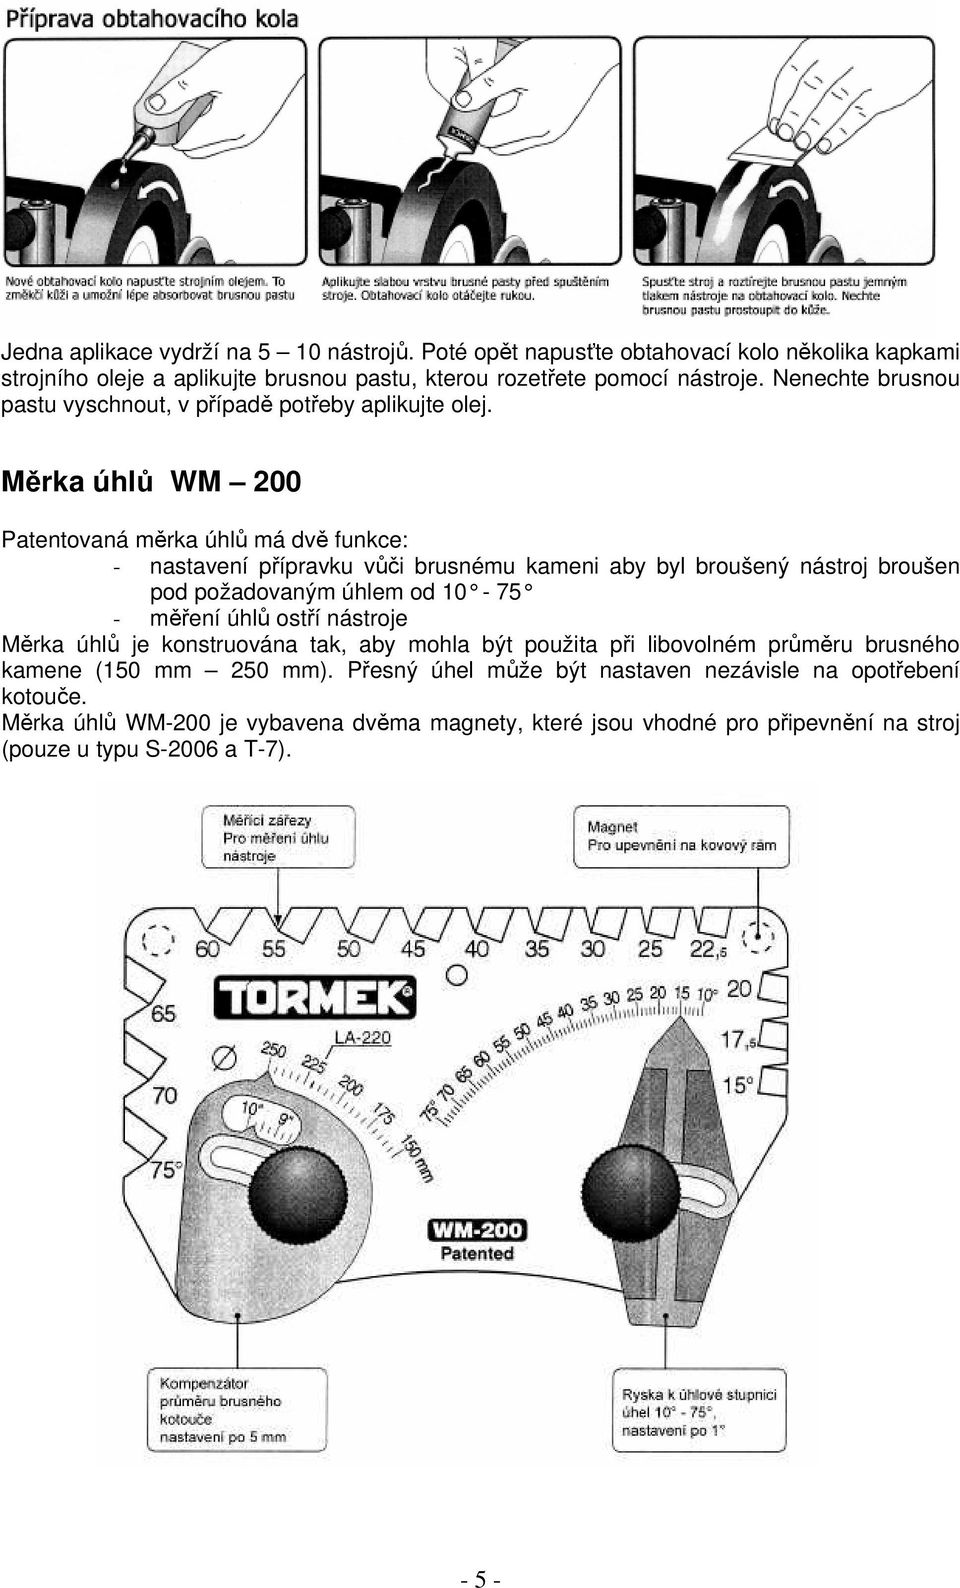 Měrka úhlů WM 200 Patentovaná měrka úhlů má dvě funkce: - nastavení přípravku vůči brusnému kameni aby byl broušený nástroj broušen pod požadovaným úhlem od 10-75 - měření úhlů